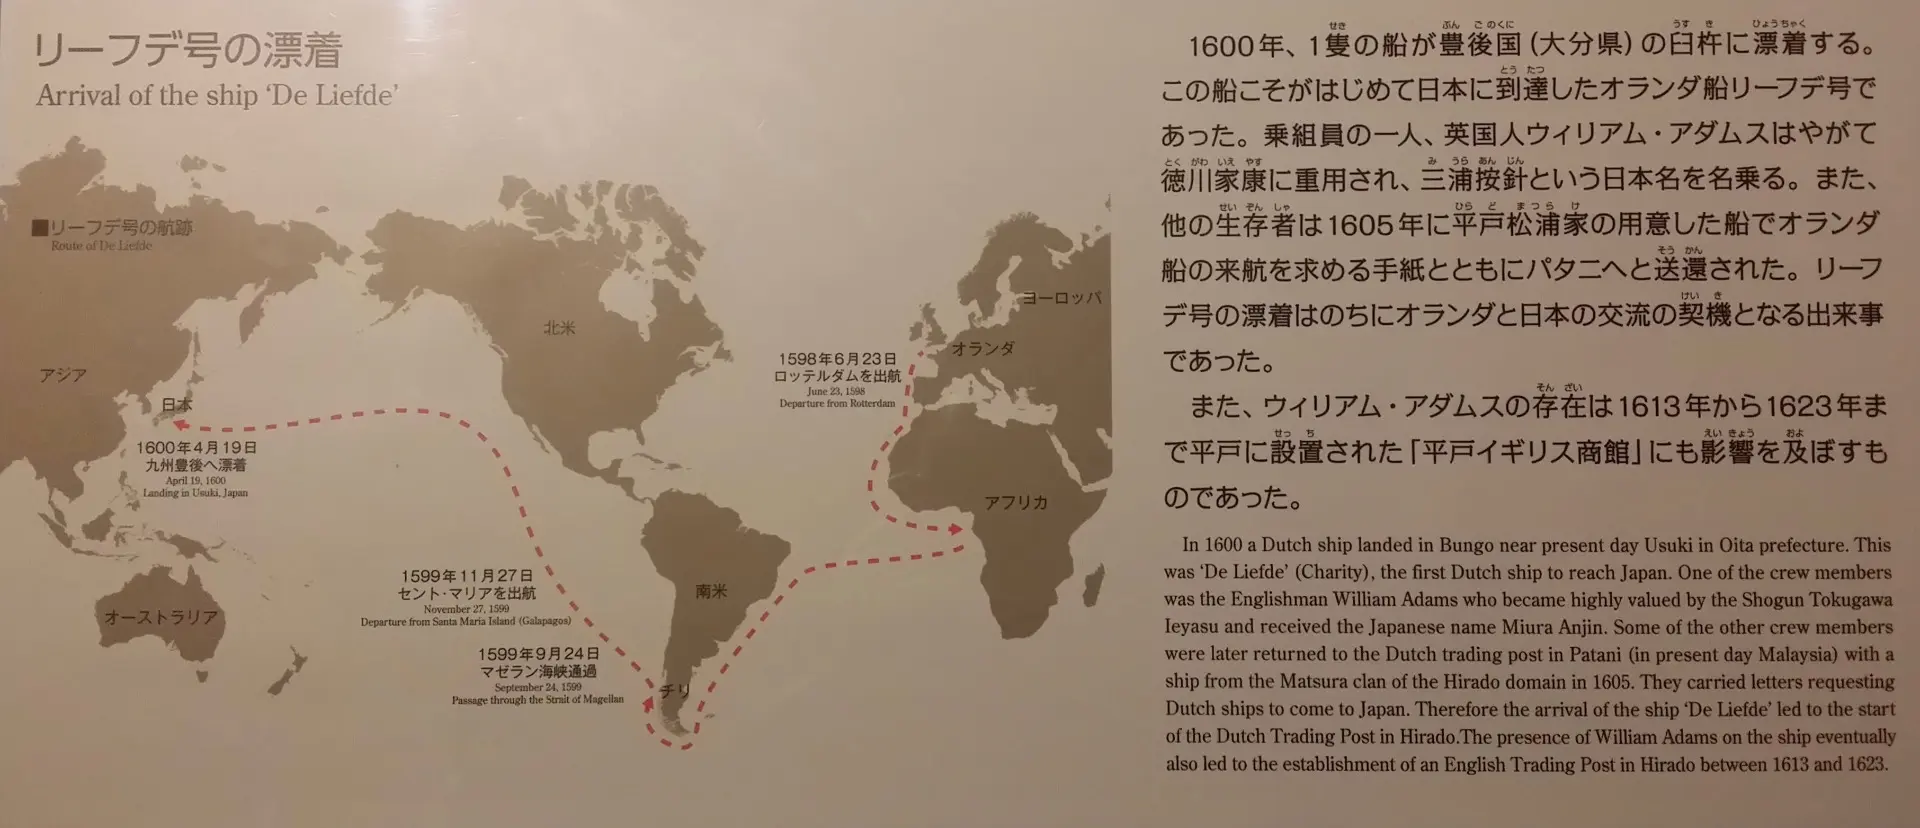 مسیر آدامز از اروپا به ژاپن